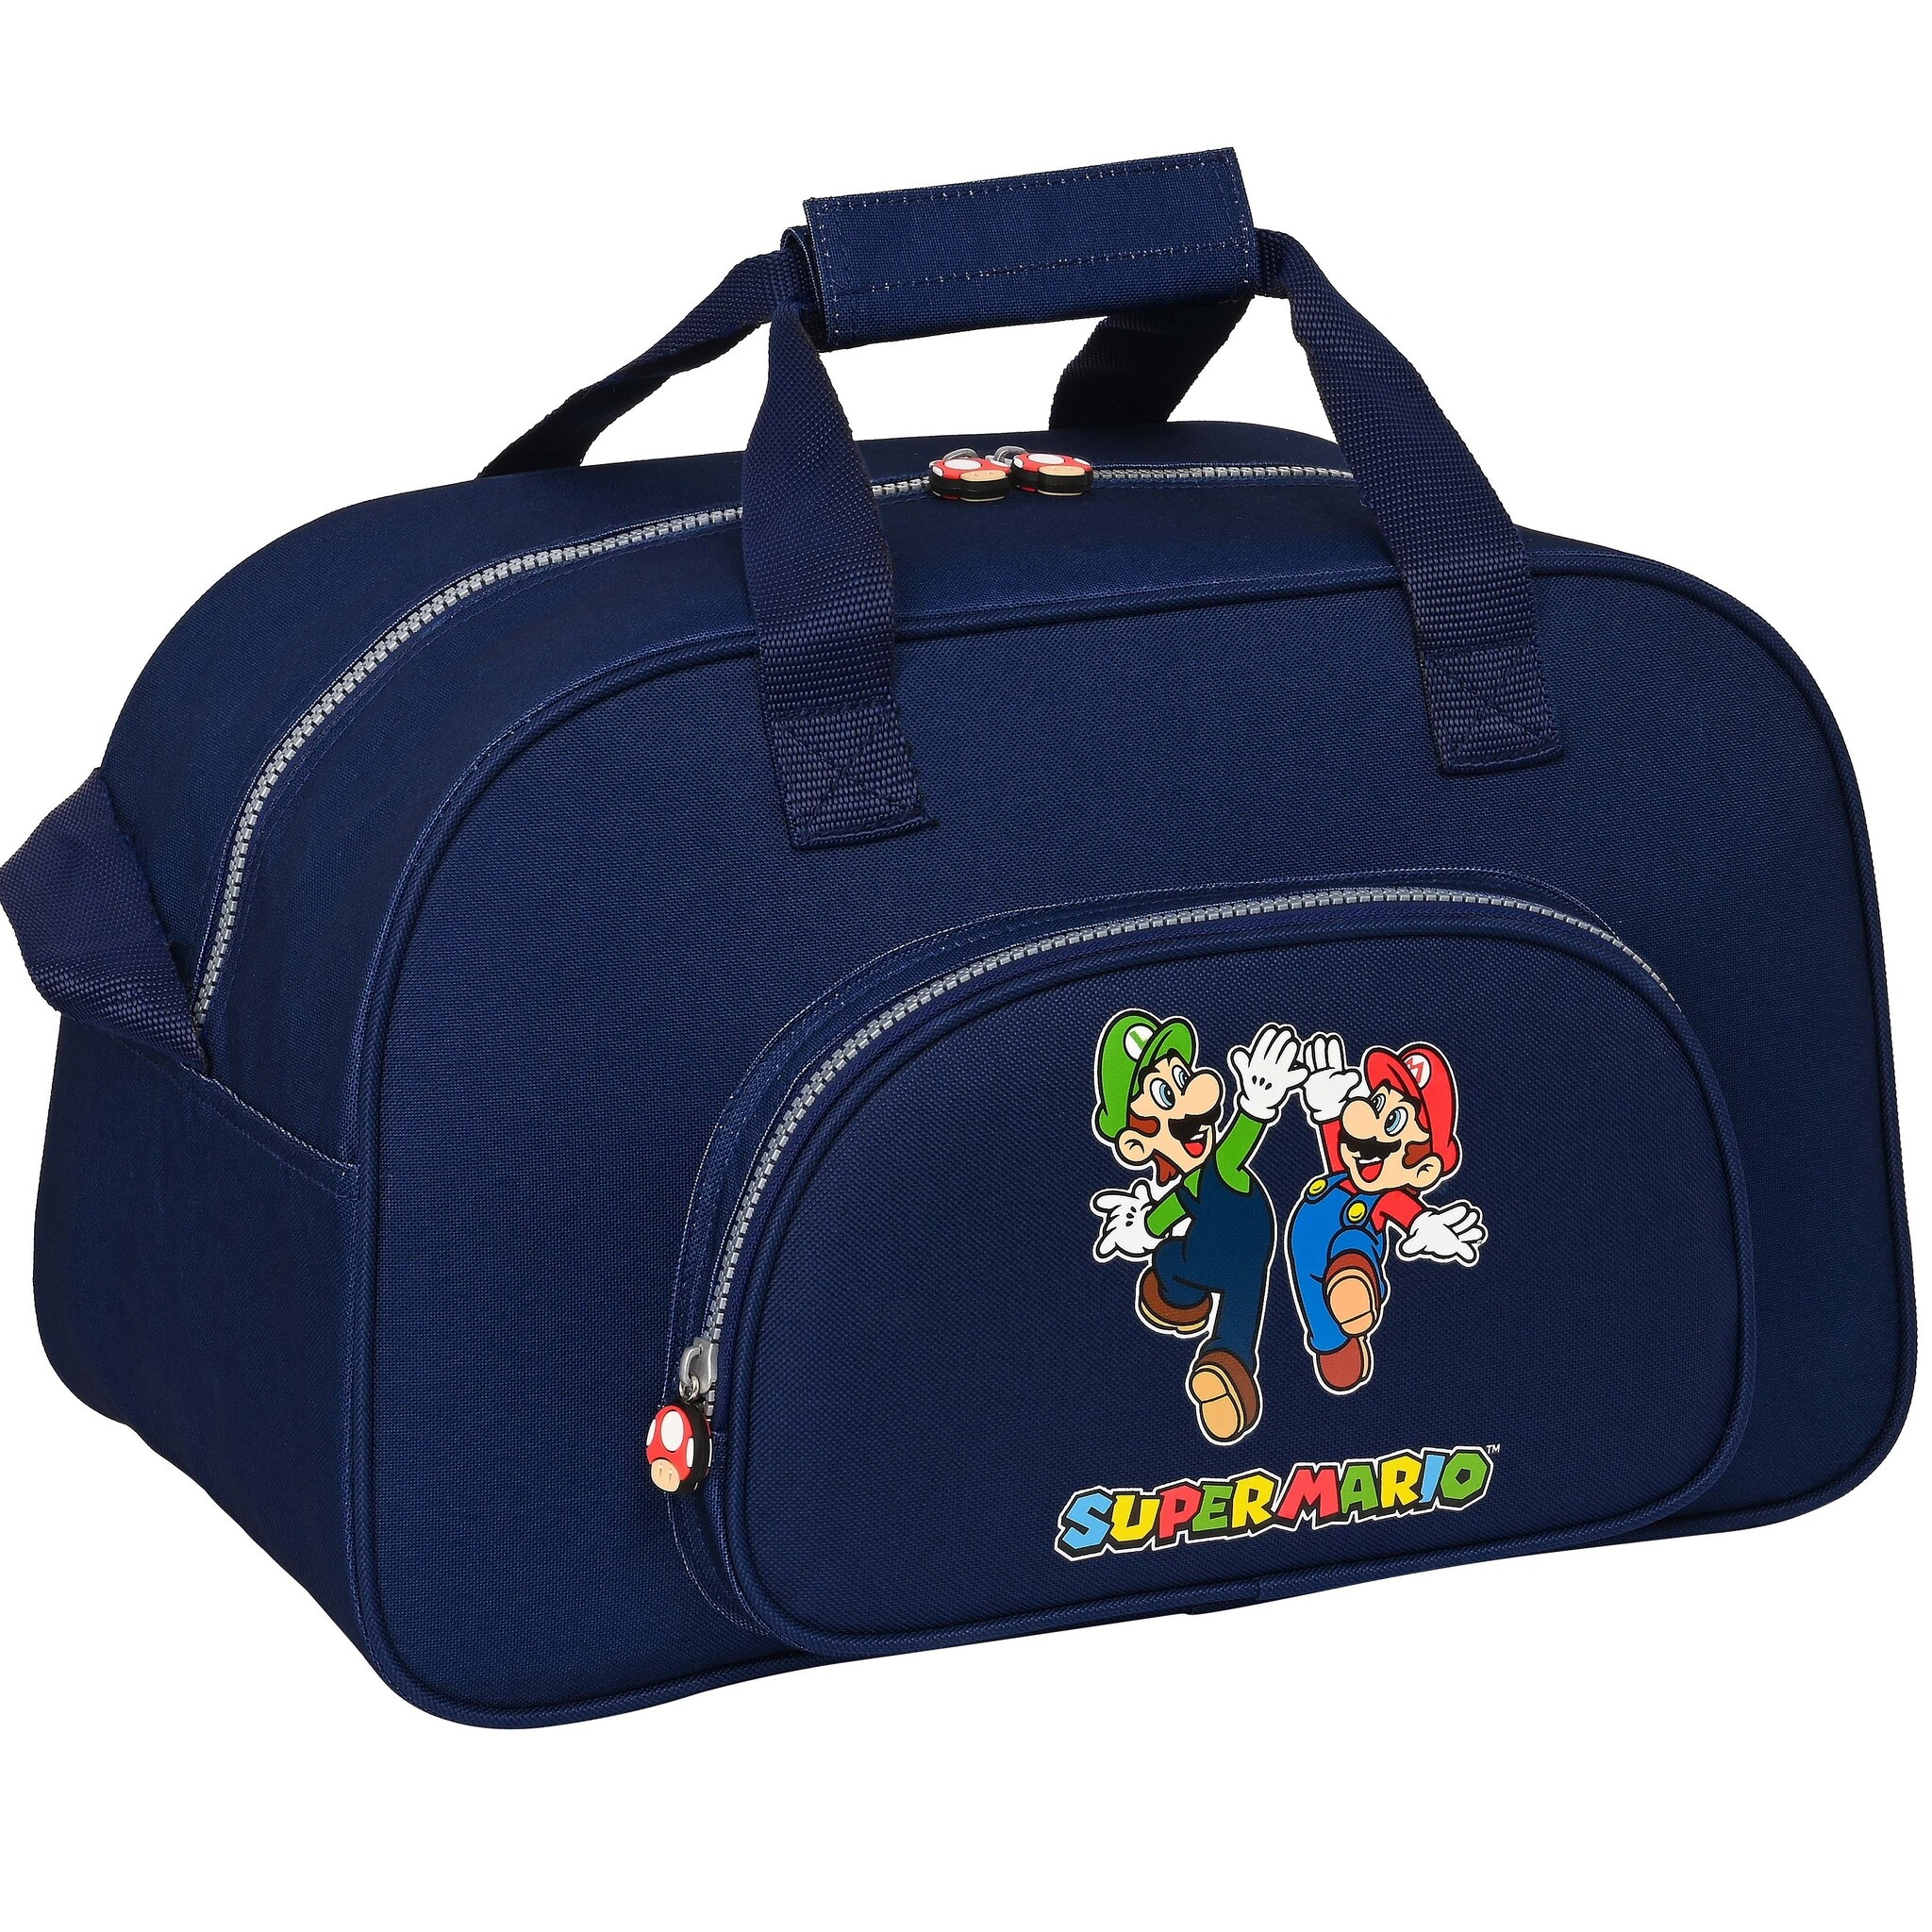 Super Mario Sports bag Bros. - 40 x 23 x 24 cm - Polyester